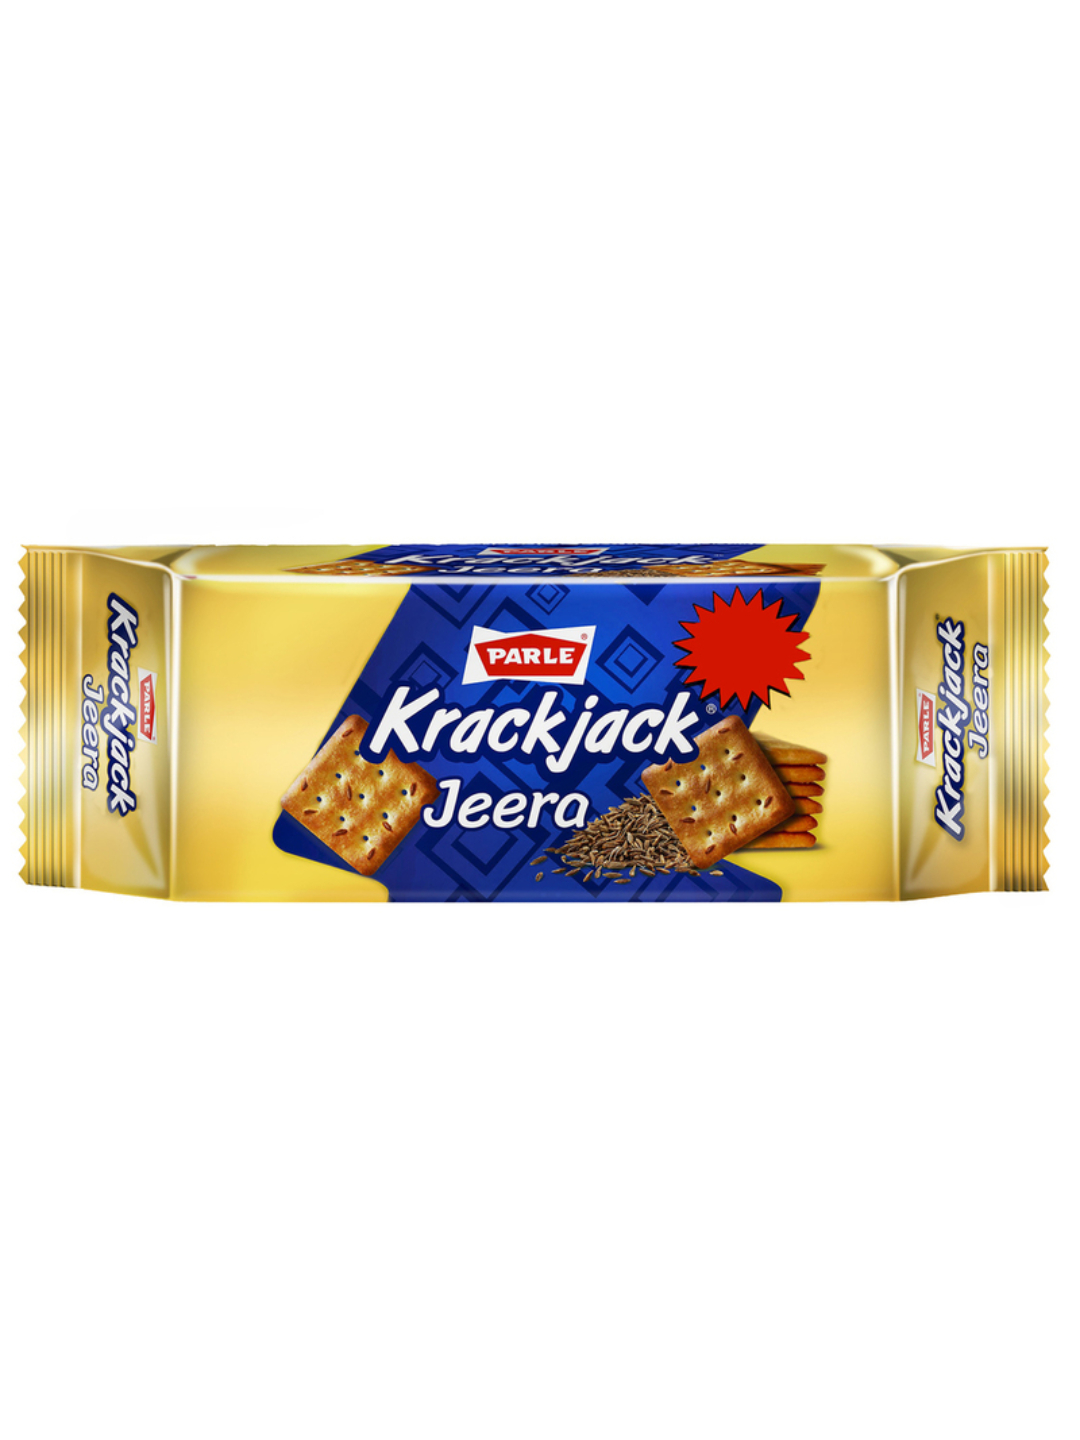 Parle Krack jack Jeera